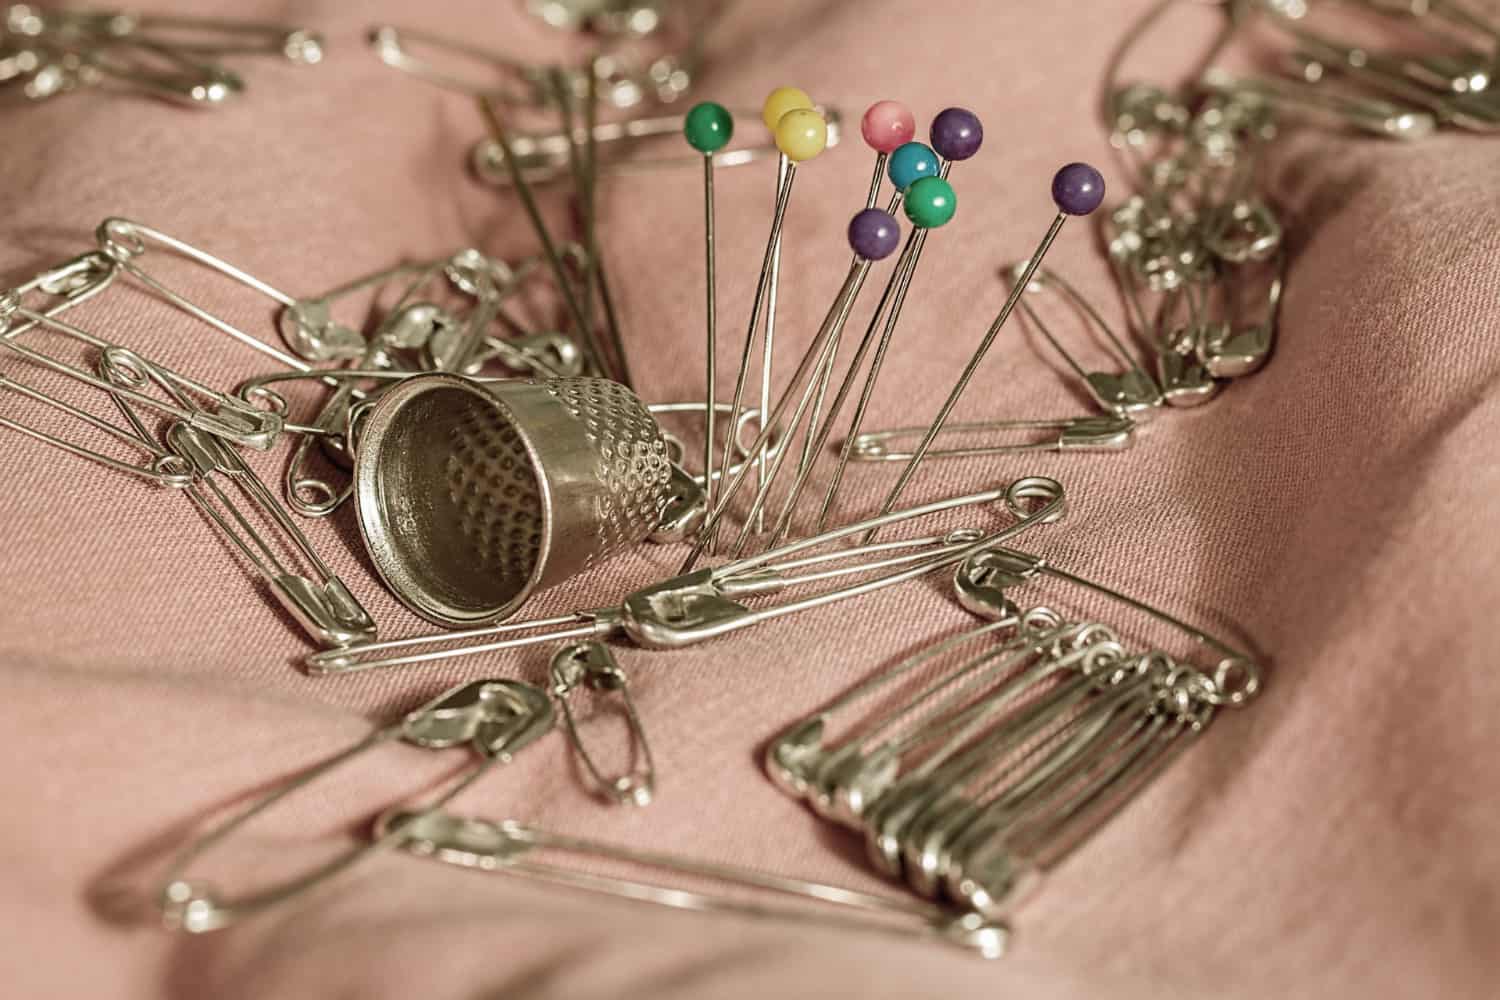 sewing-pins-safety-pins